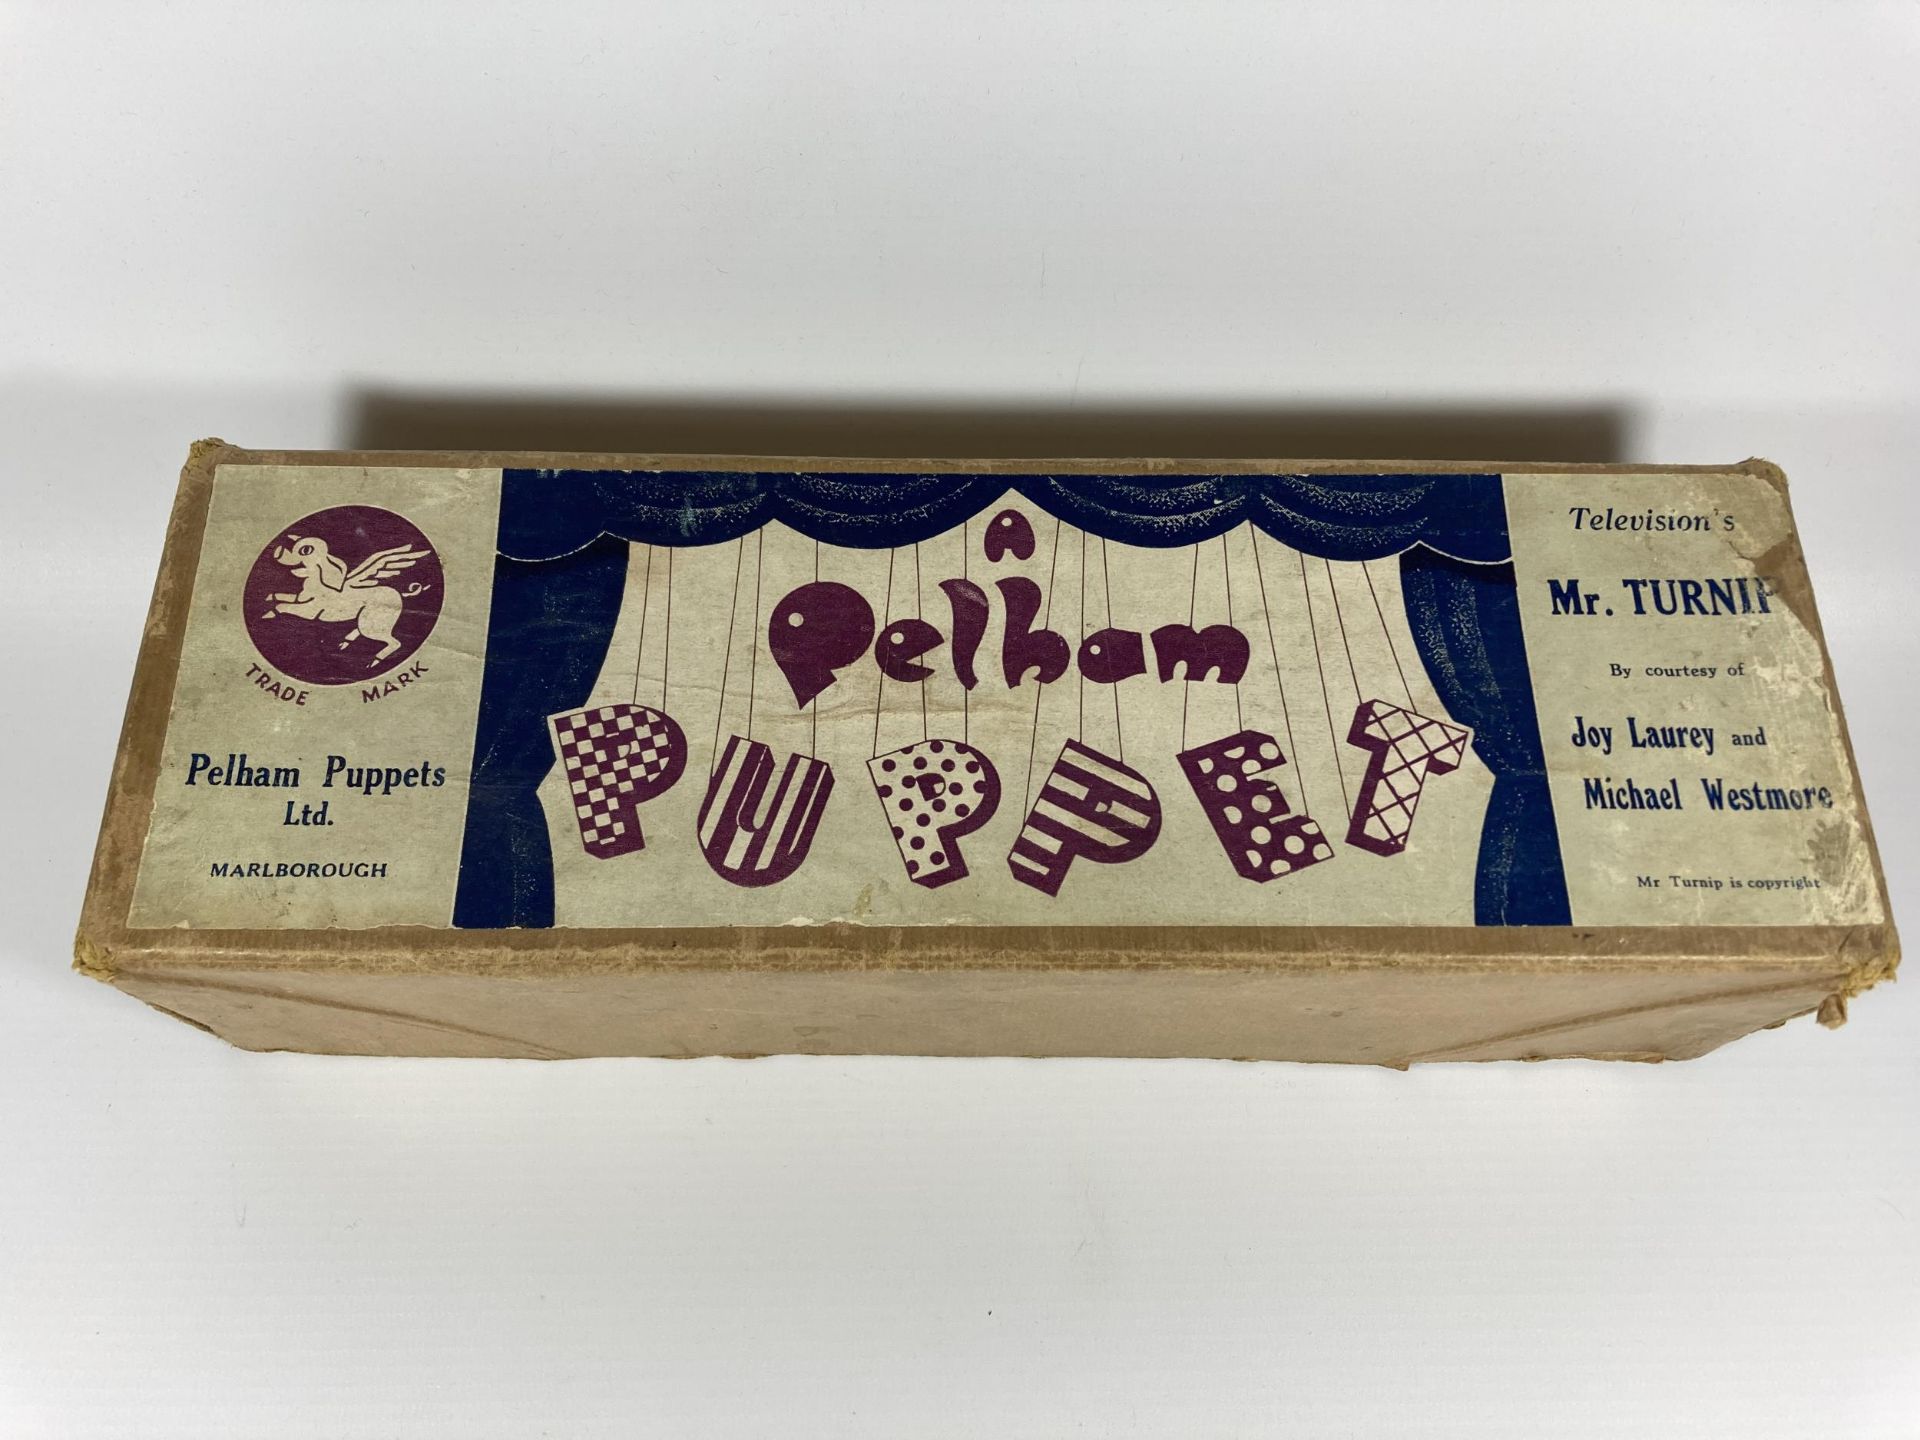 A VINTAGE PELHAM PUPPET - MR TURNIP IN ORIGINAL BOX - Image 2 of 3